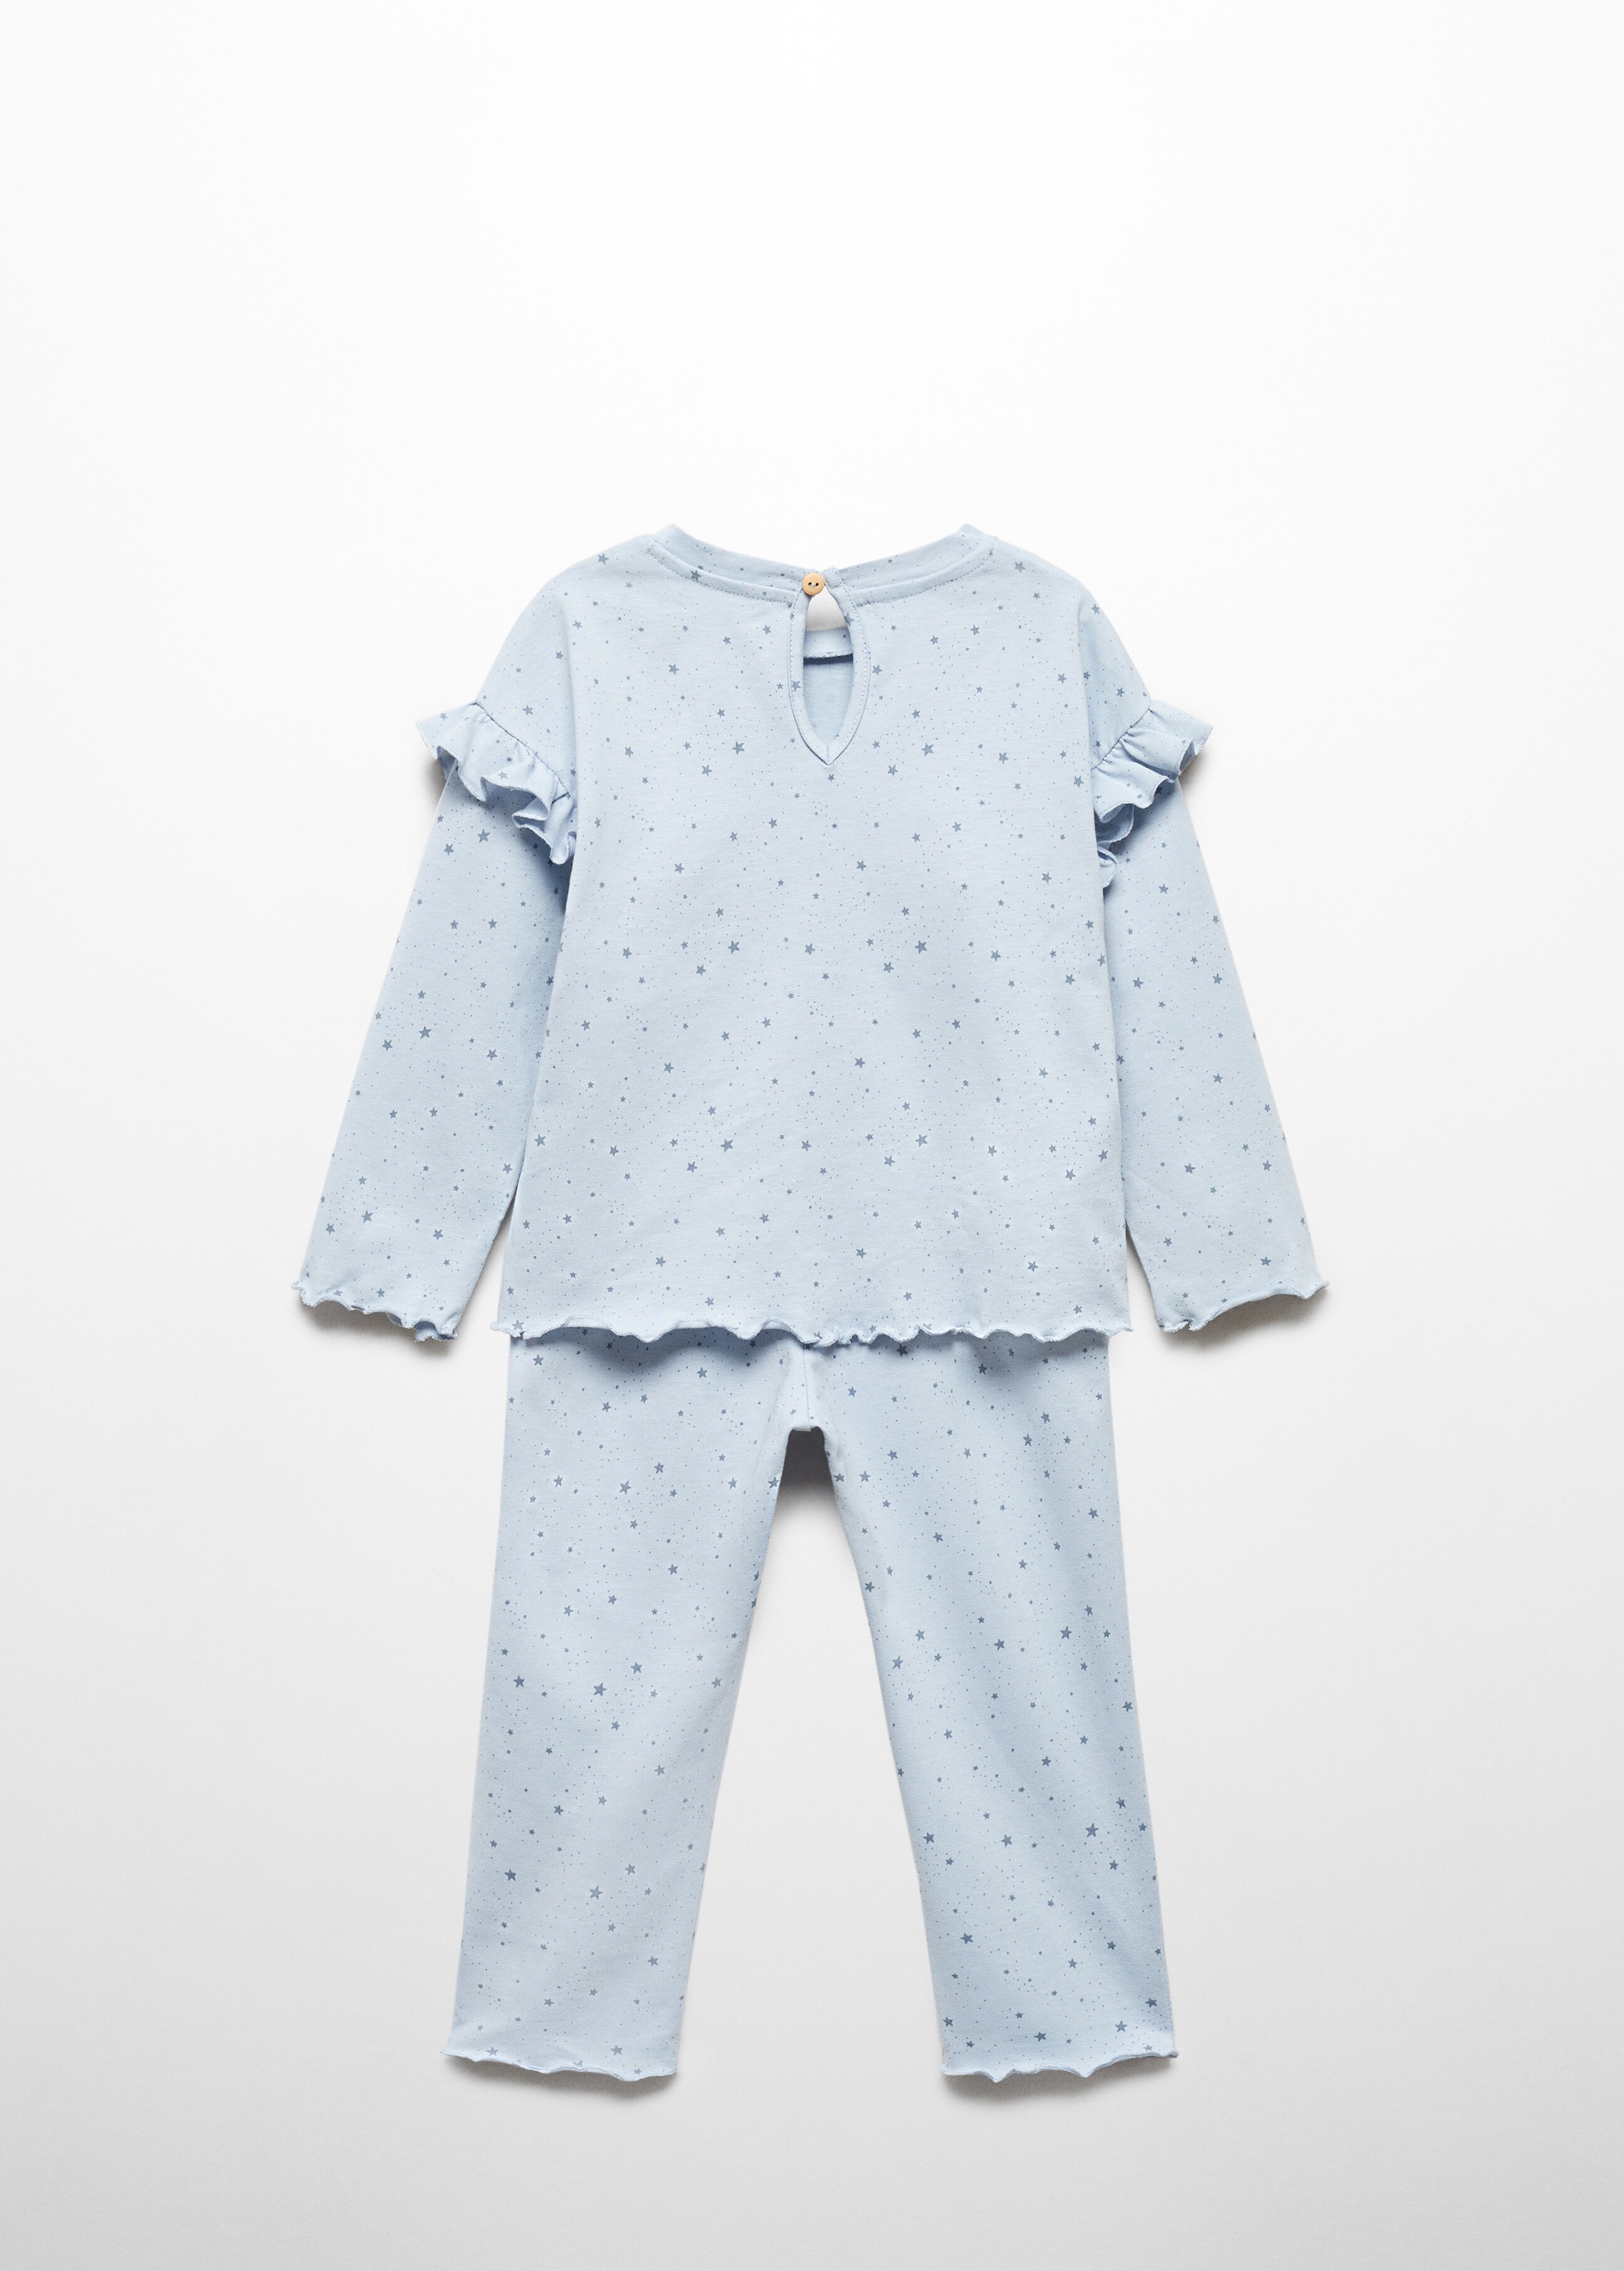 Star print pyjamas - Reverse of the article